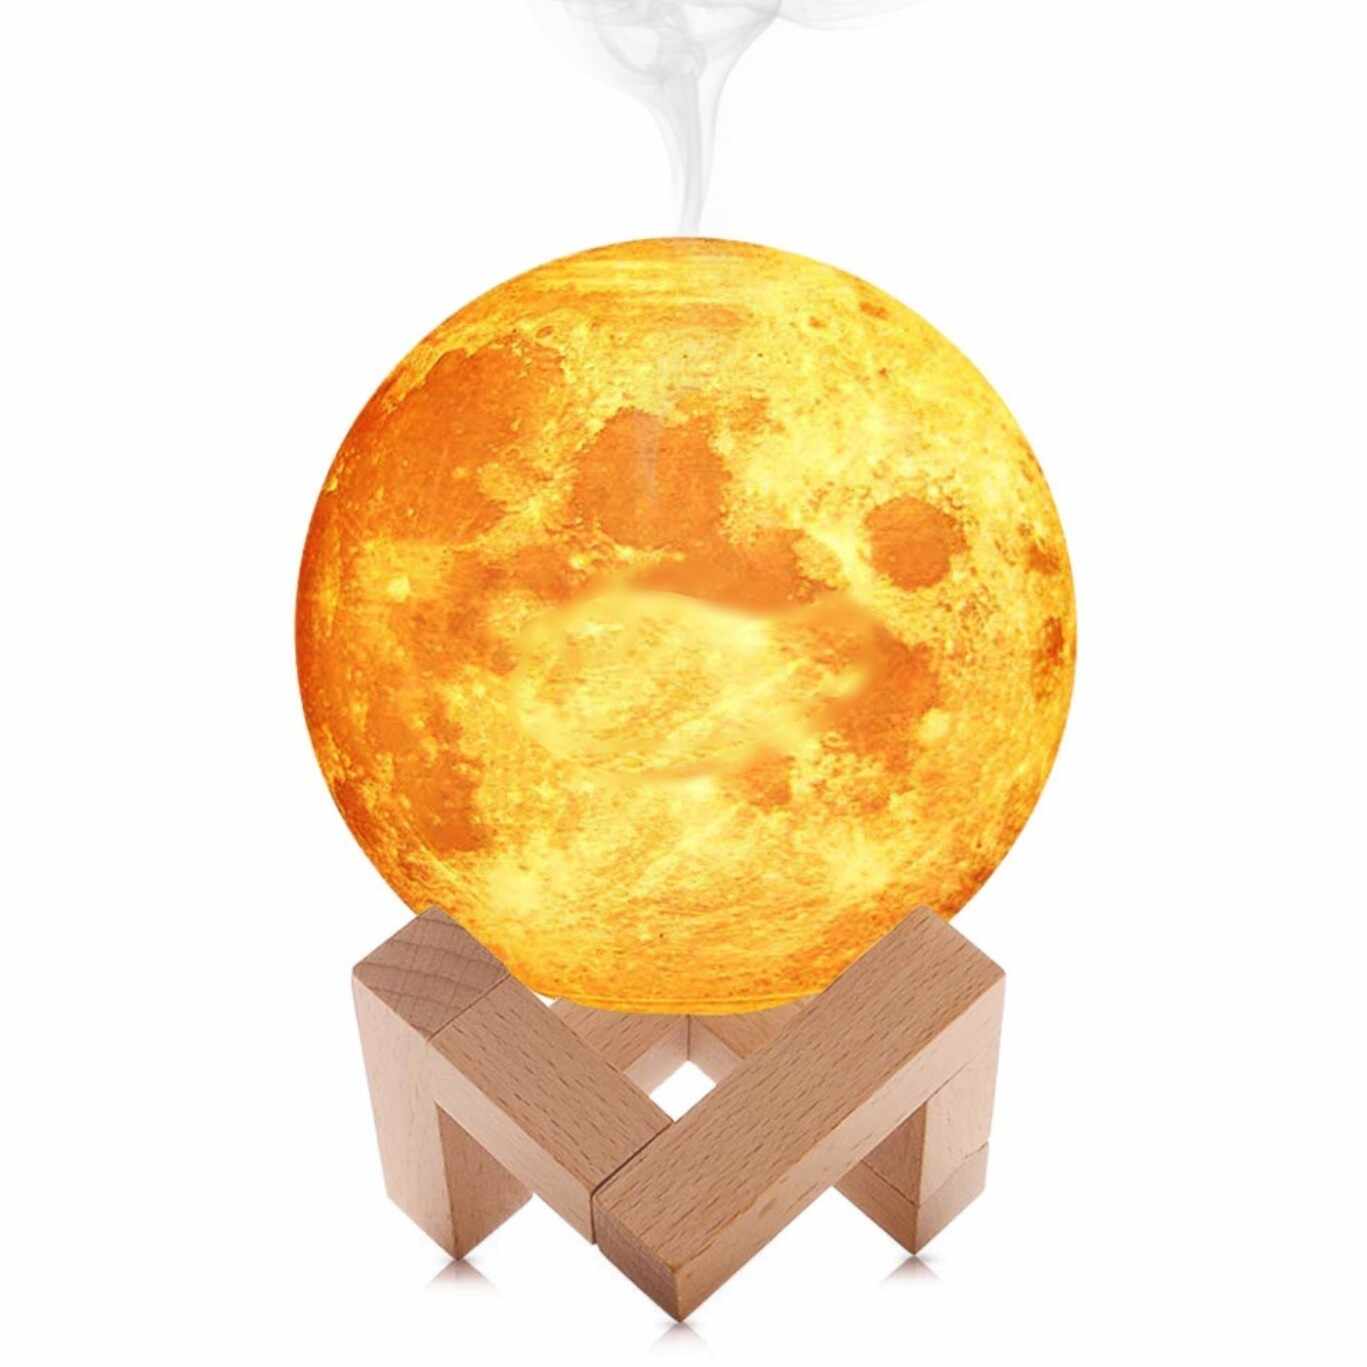 Umidificator lampa luna 3D cu suport de lemn 880 ml